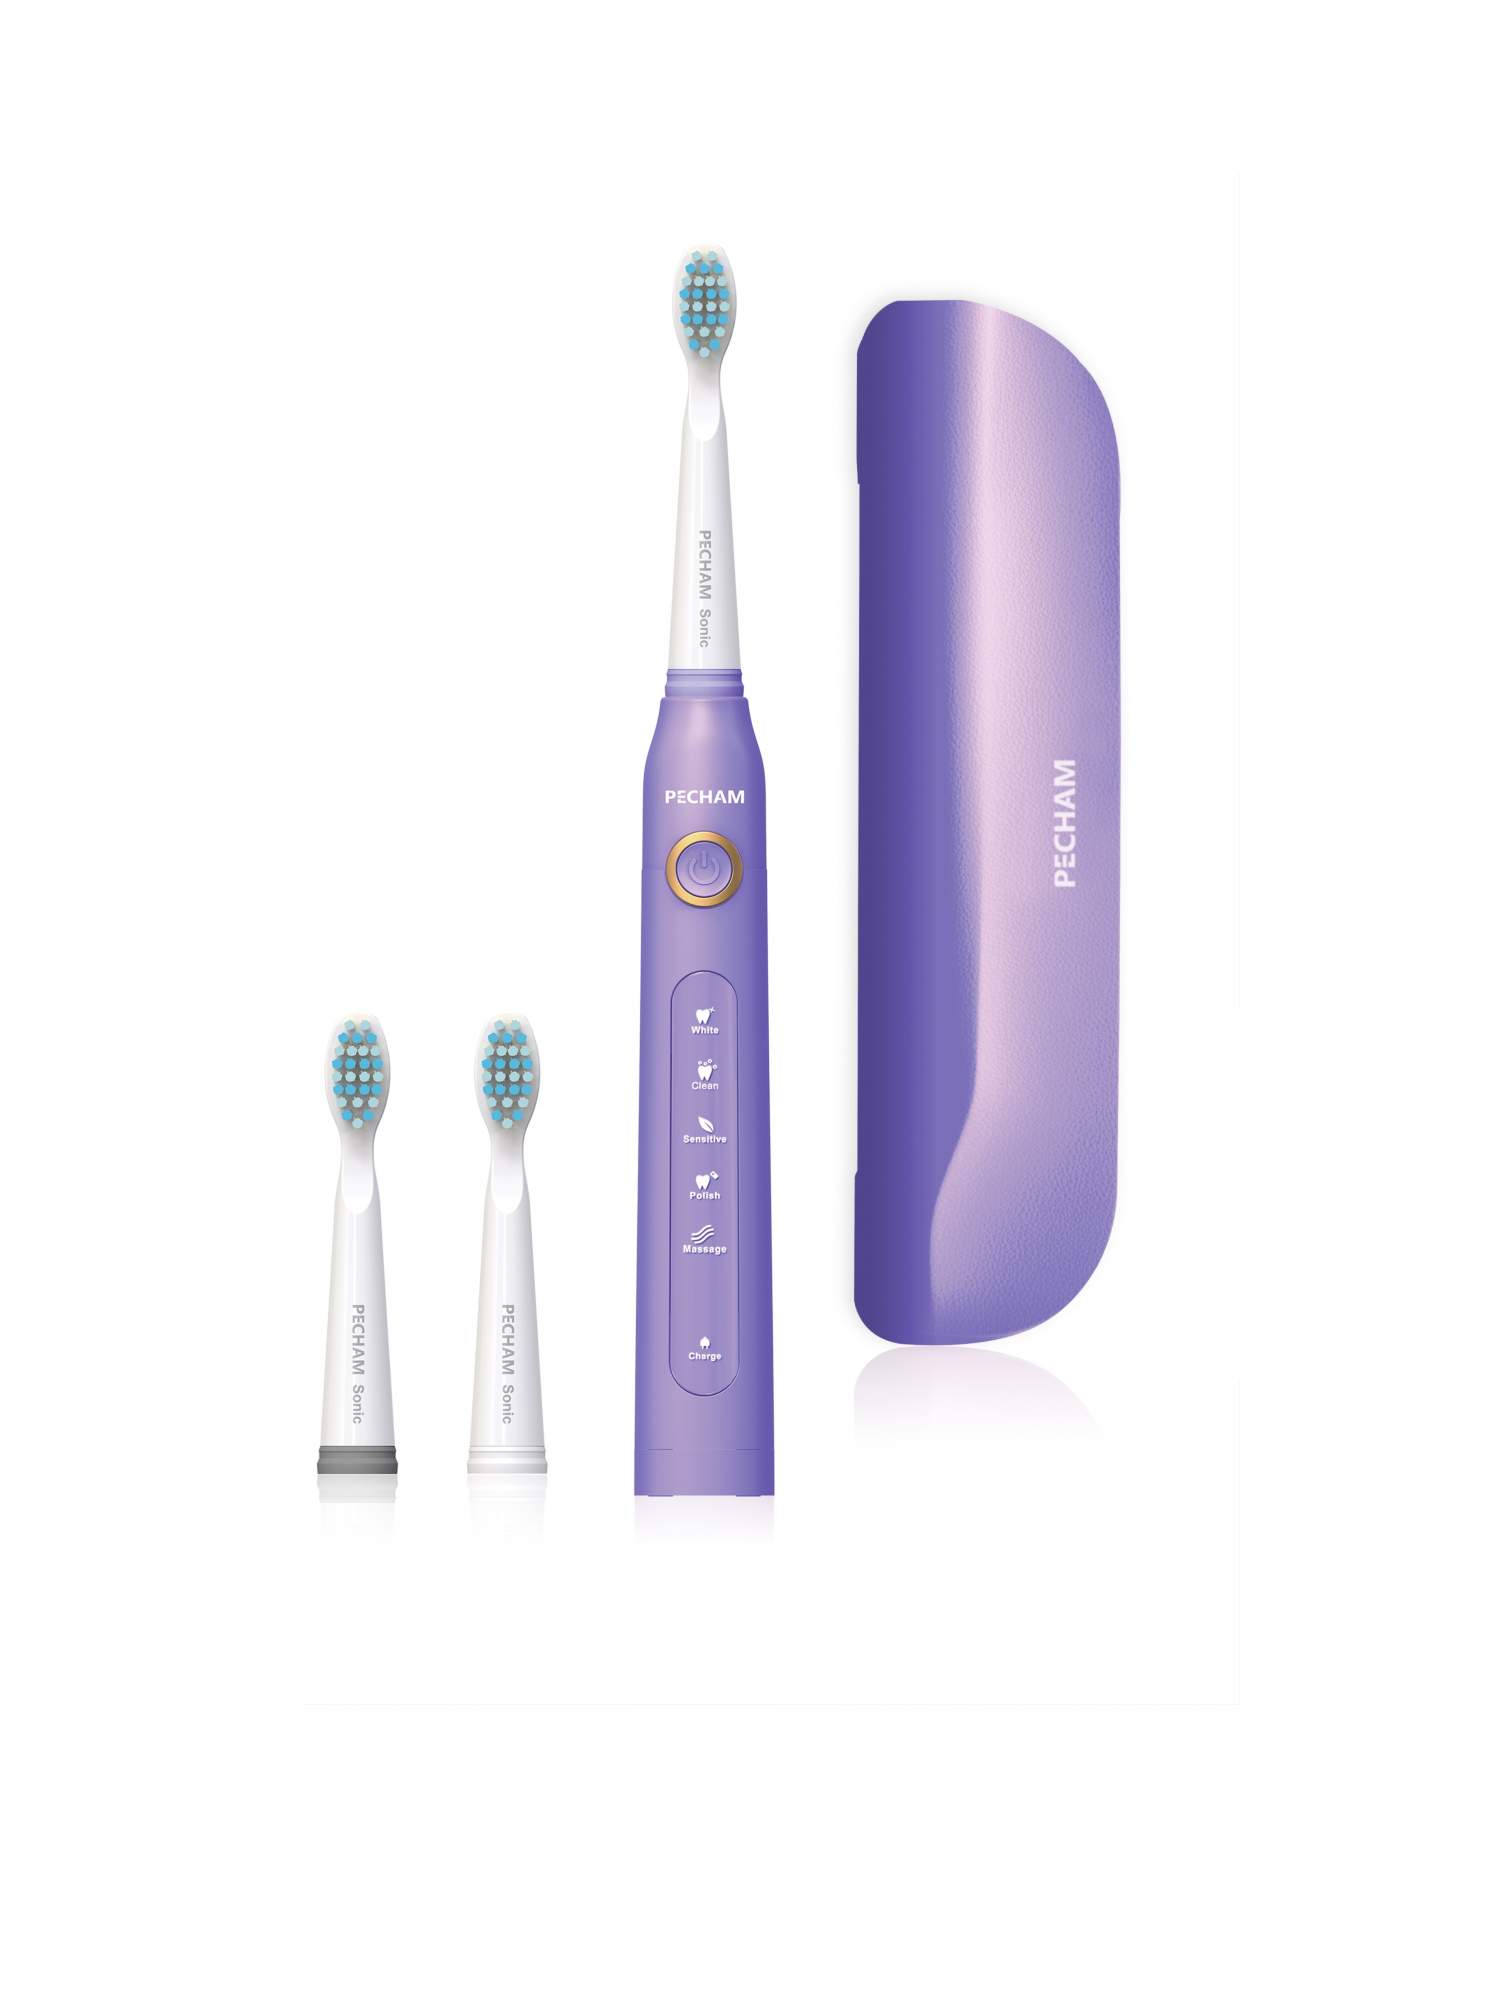 Электрическая зубная щетка PECHAM Sonic фиолетовый - купить в РЕСНАМ (FBS), цена на Мегамаркет